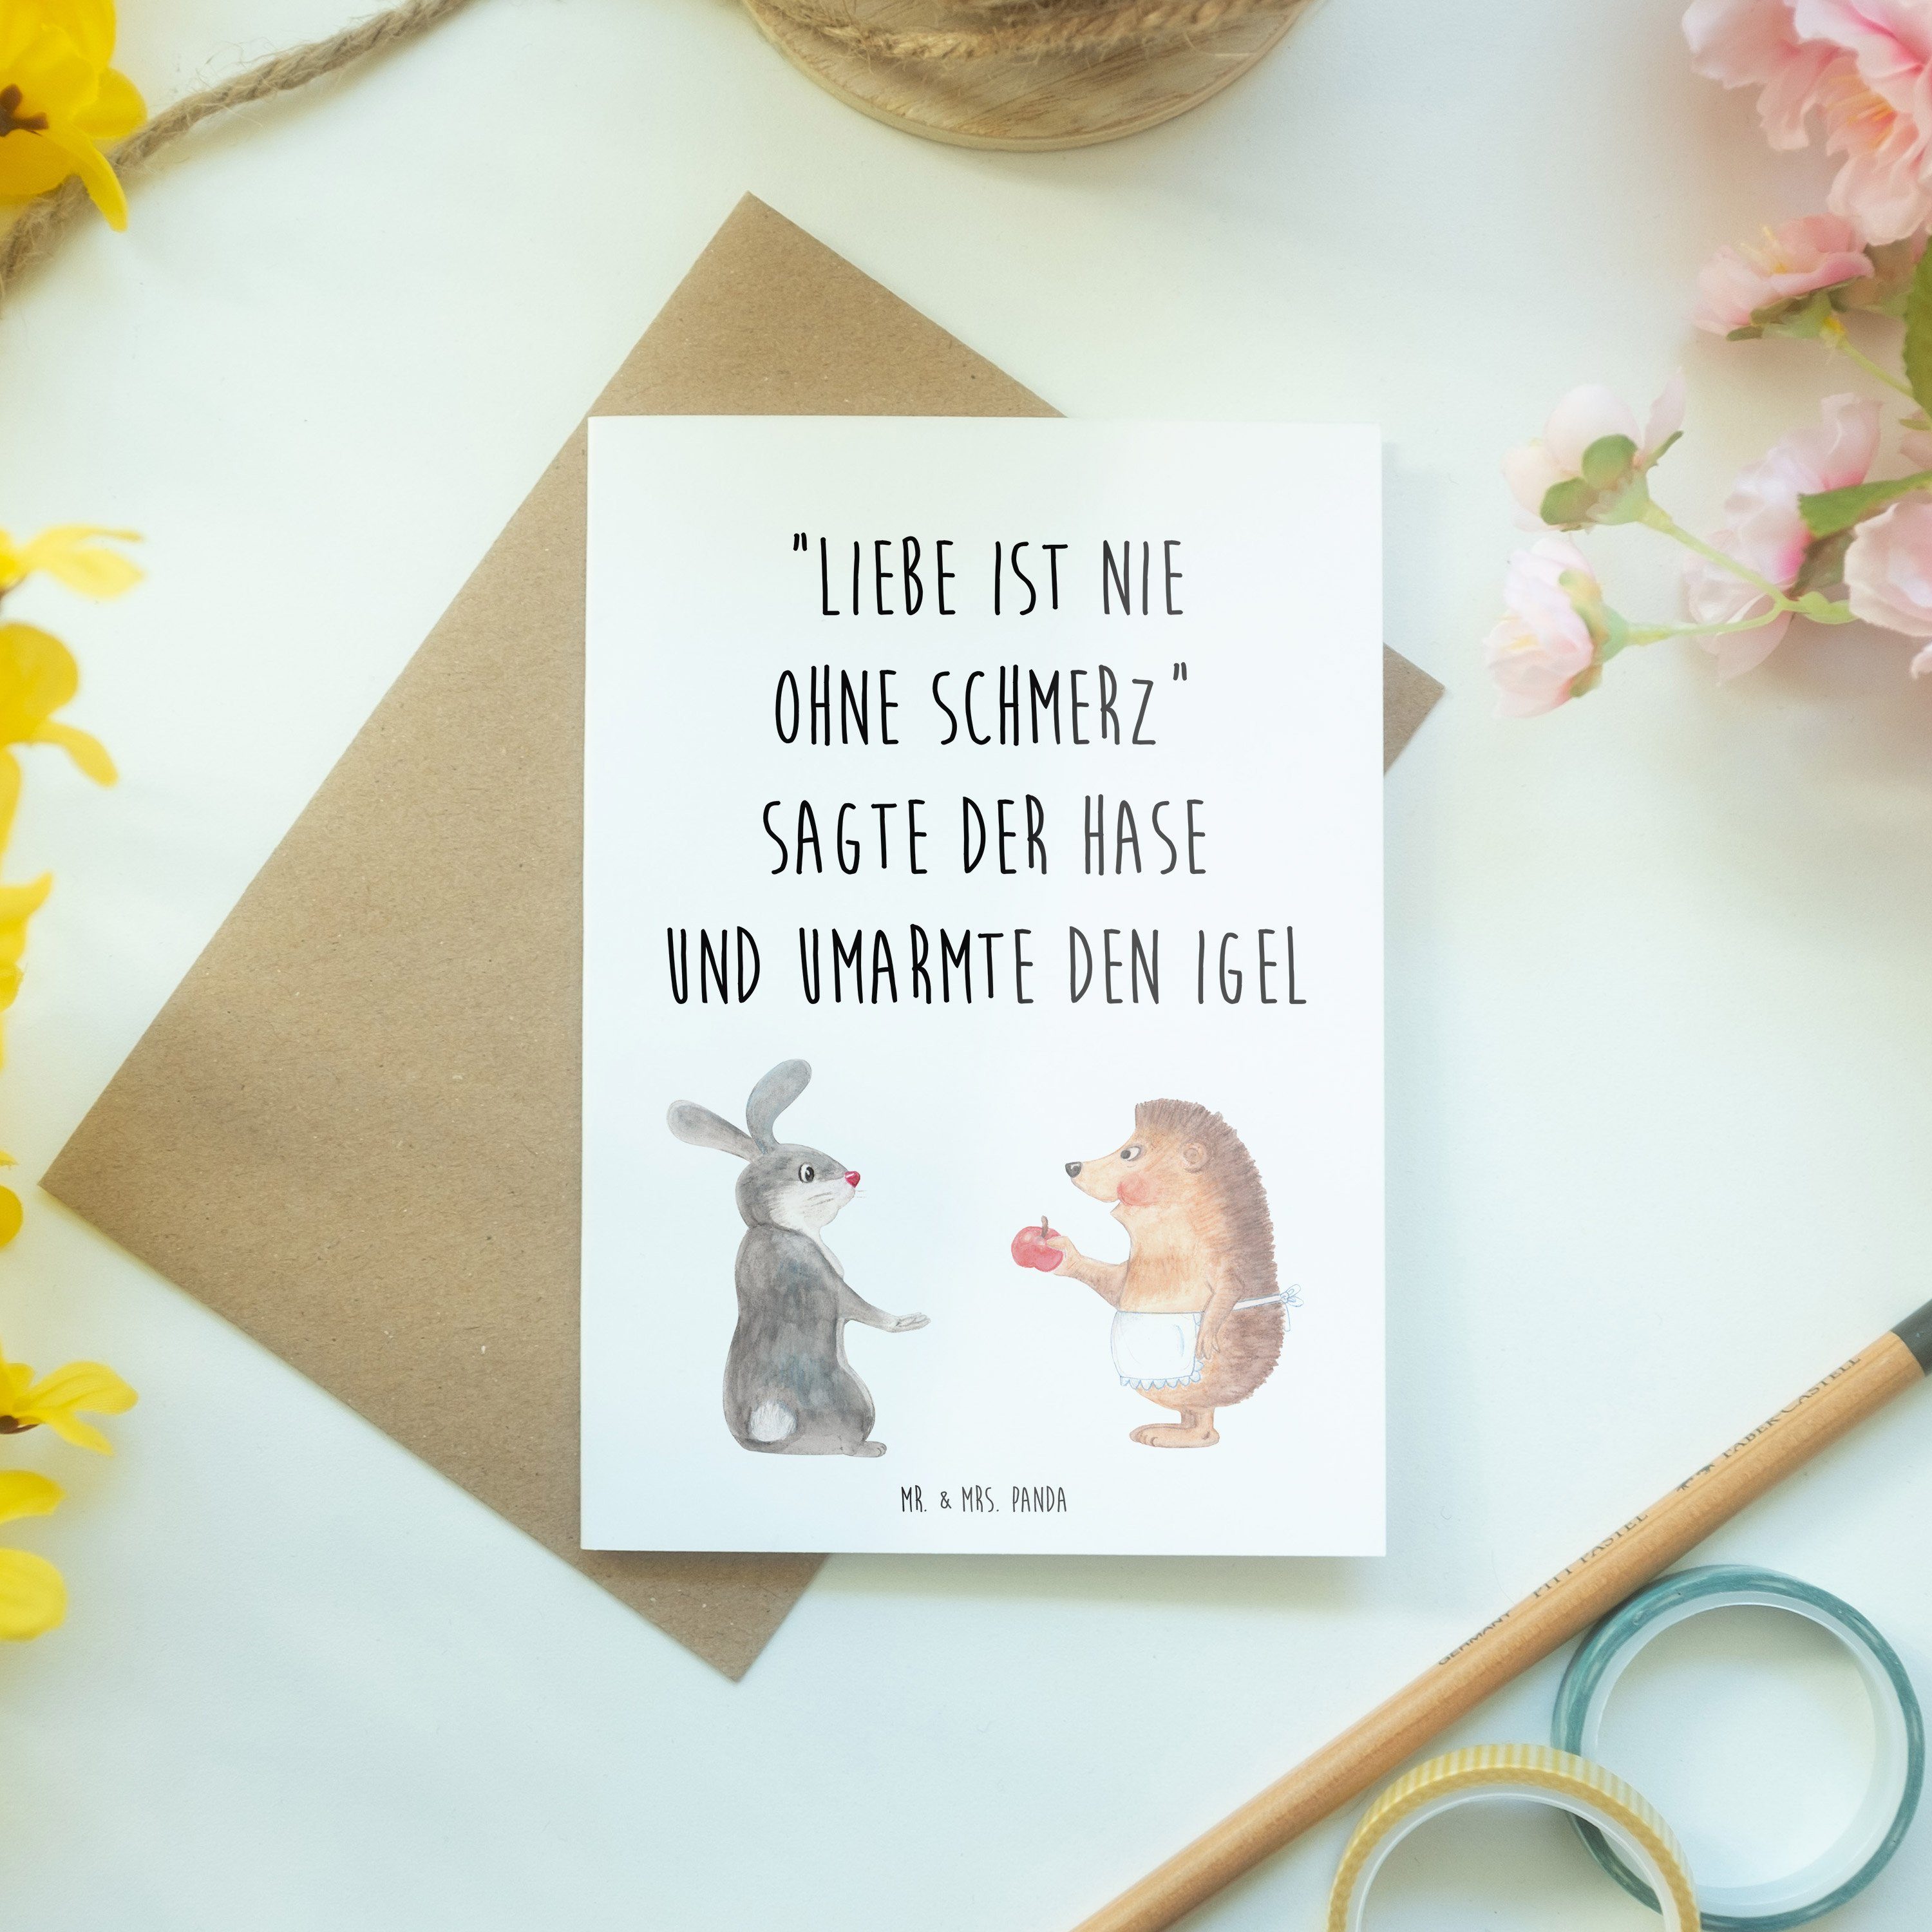 Mr. & Mrs. ist Schmerz Liebe - nie Geschenk, Panda Geburtstagskarte, Grußkarte Karte - Weiß ohne